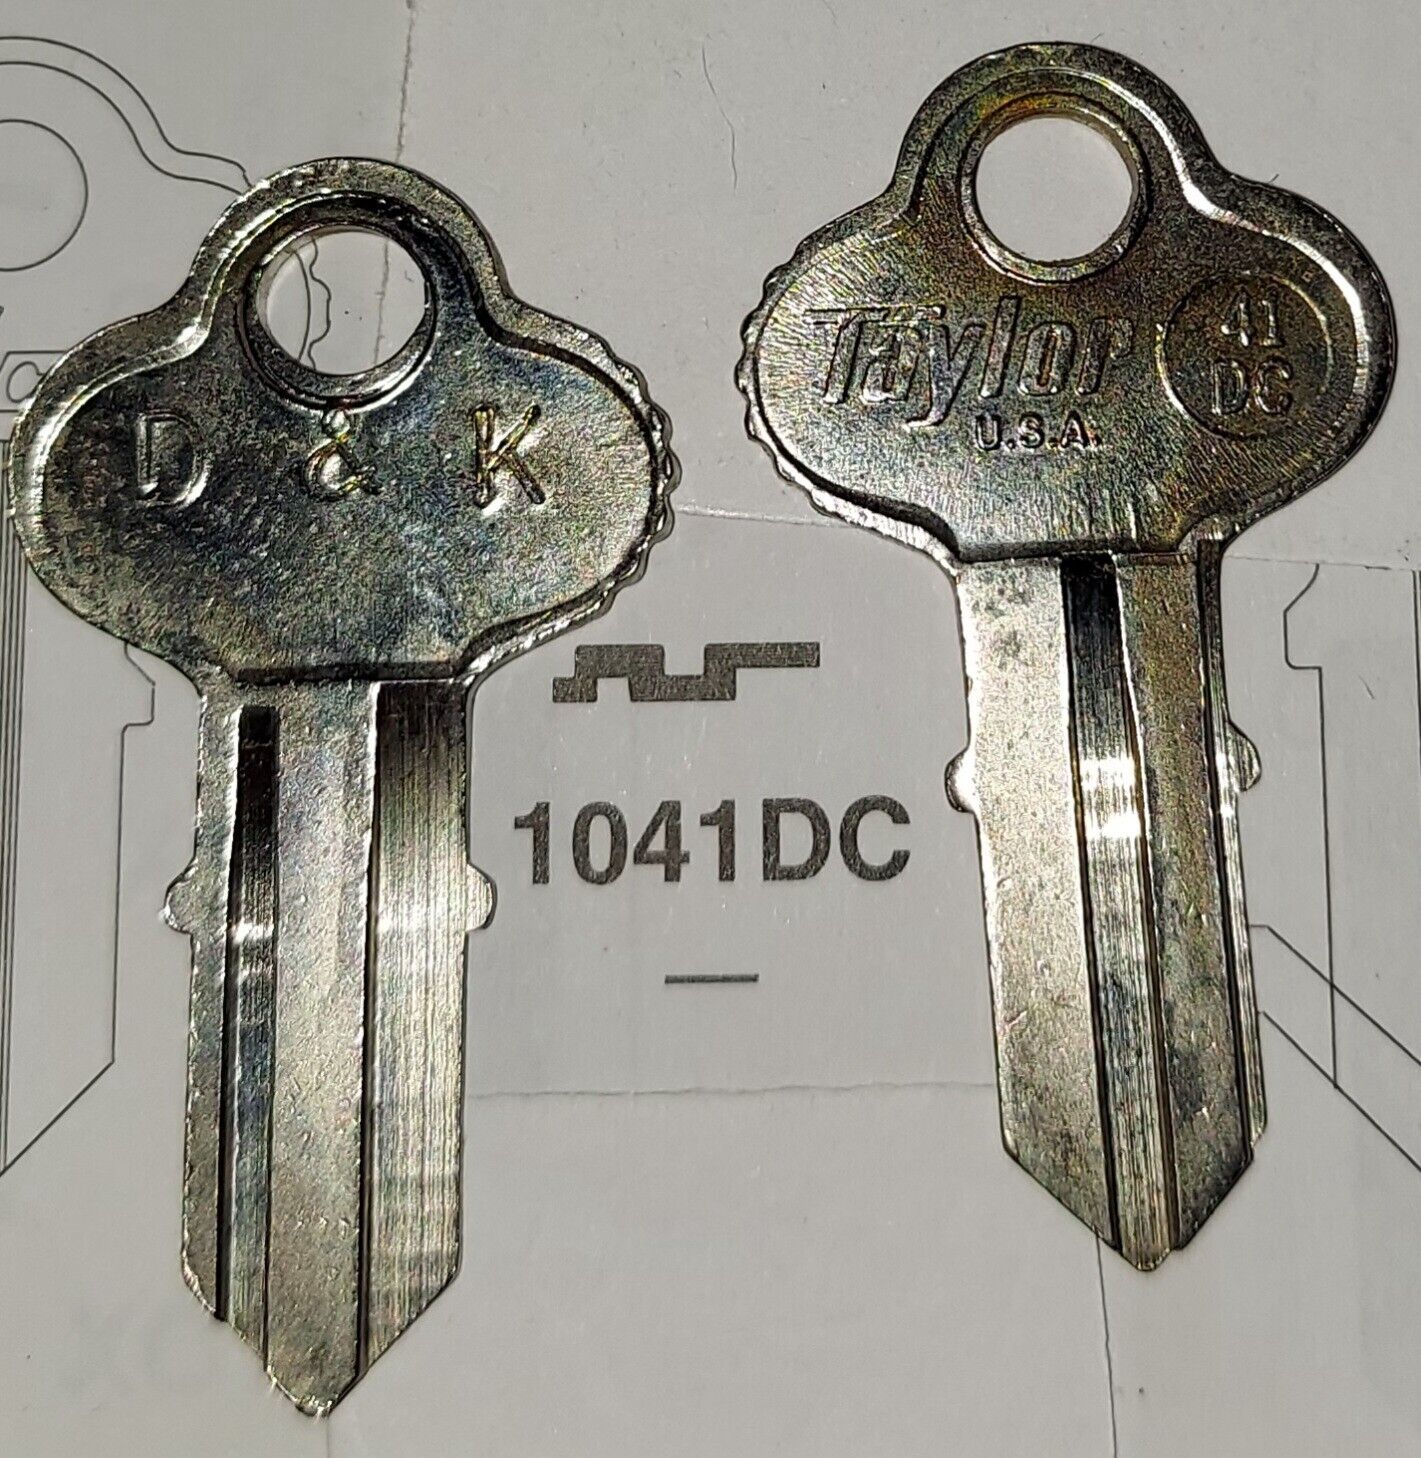 Chicago 1041DC, Vintage Key Blank.